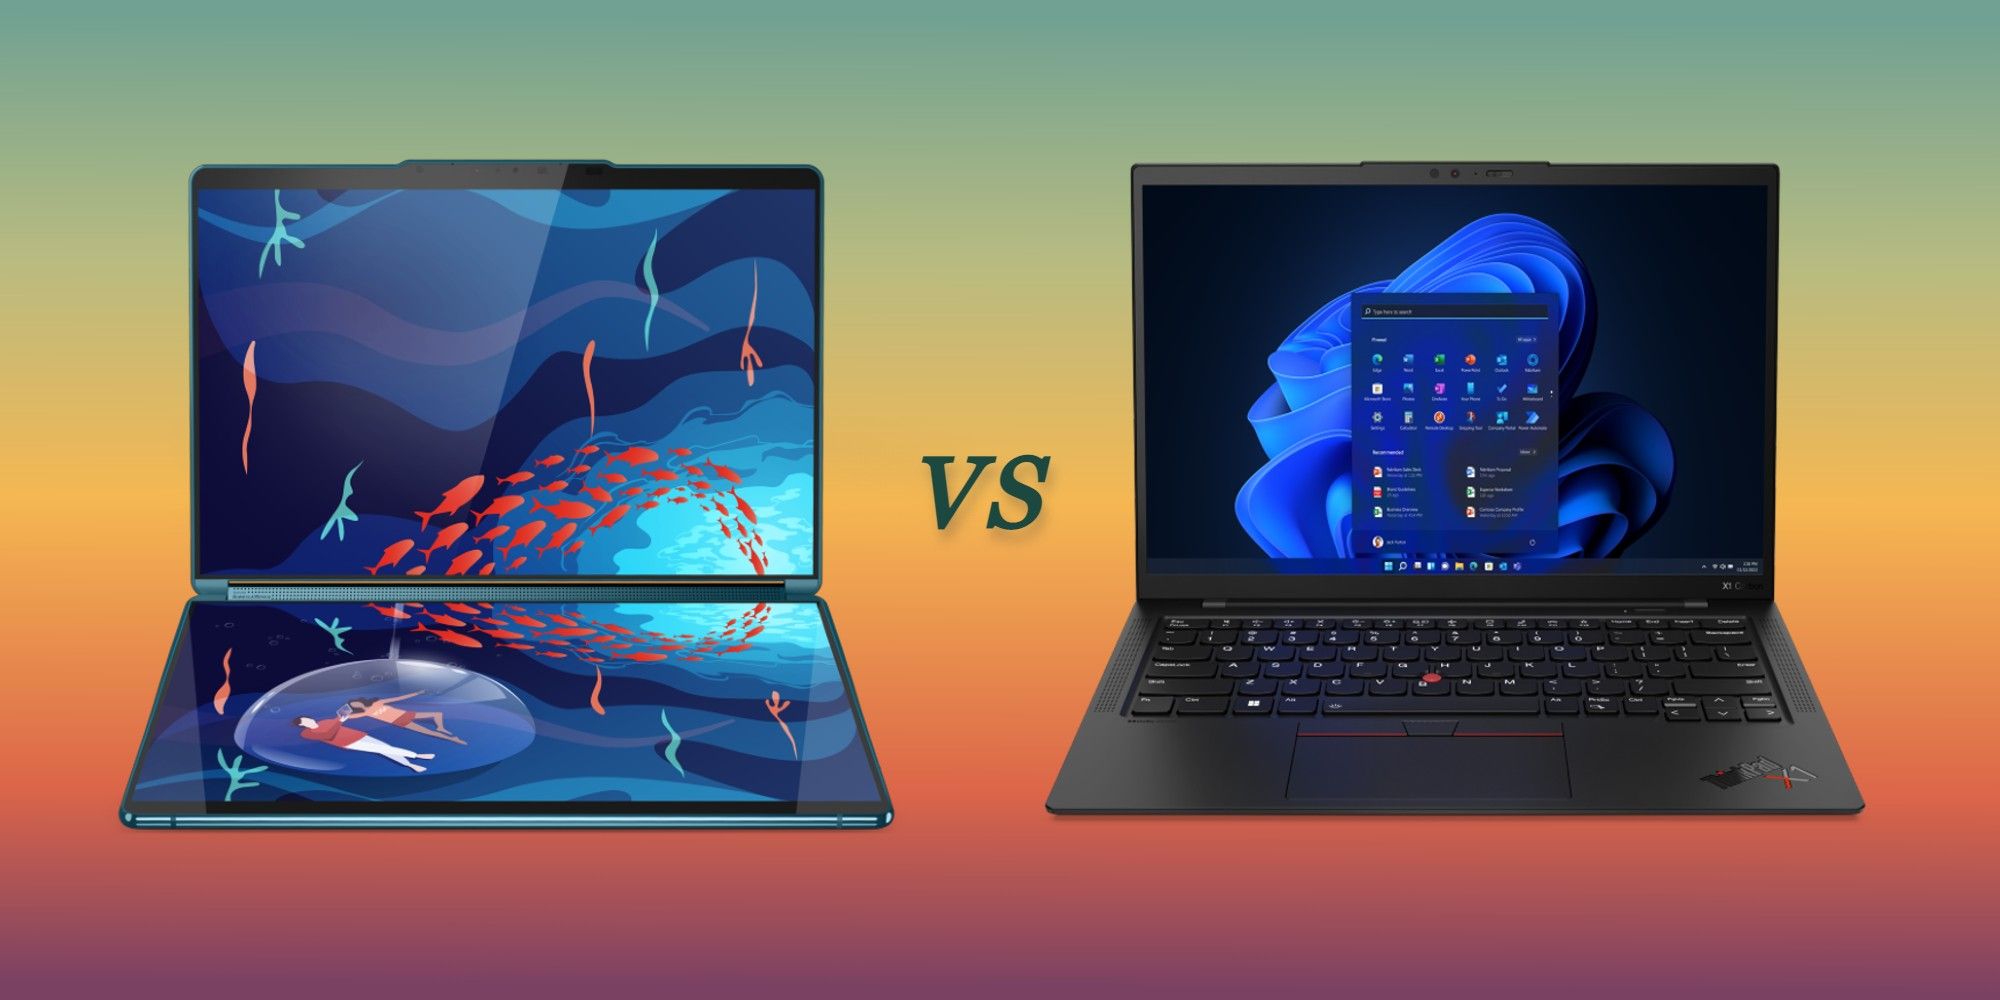 Pantalla dual vs.  Computadoras portátiles tradicionales: ¿necesita un teclado físico?